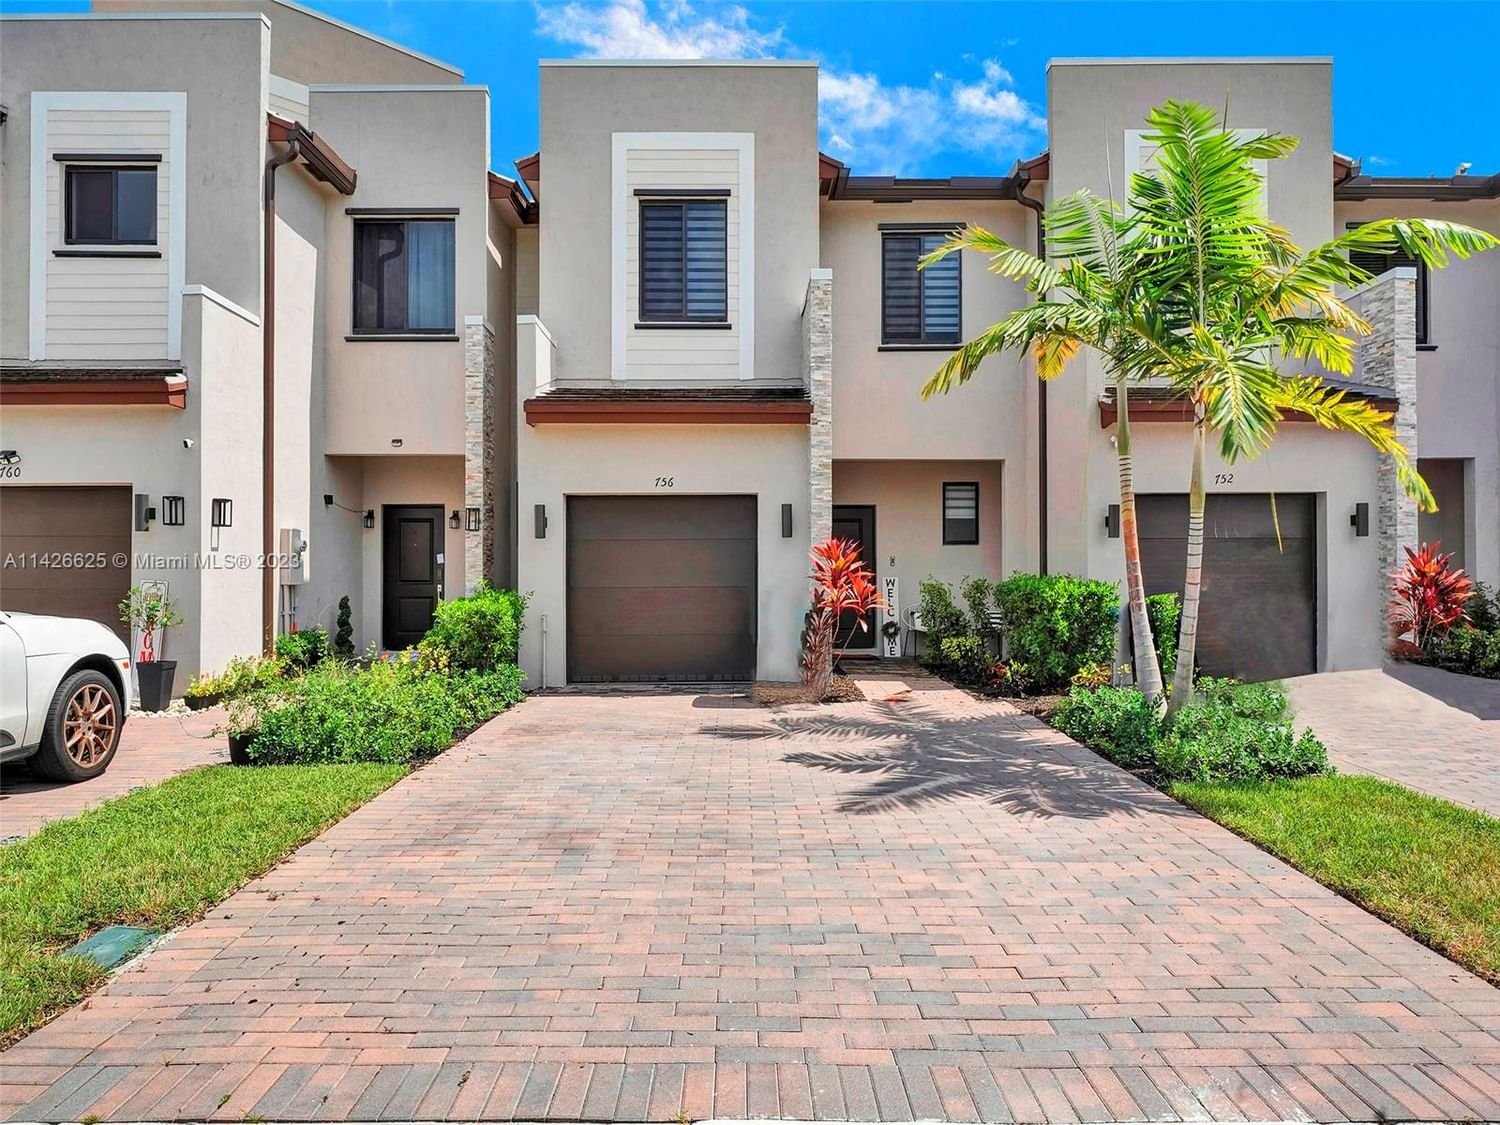 Real estate property located at 756 208th Ln, Miami-Dade County, Miami, FL